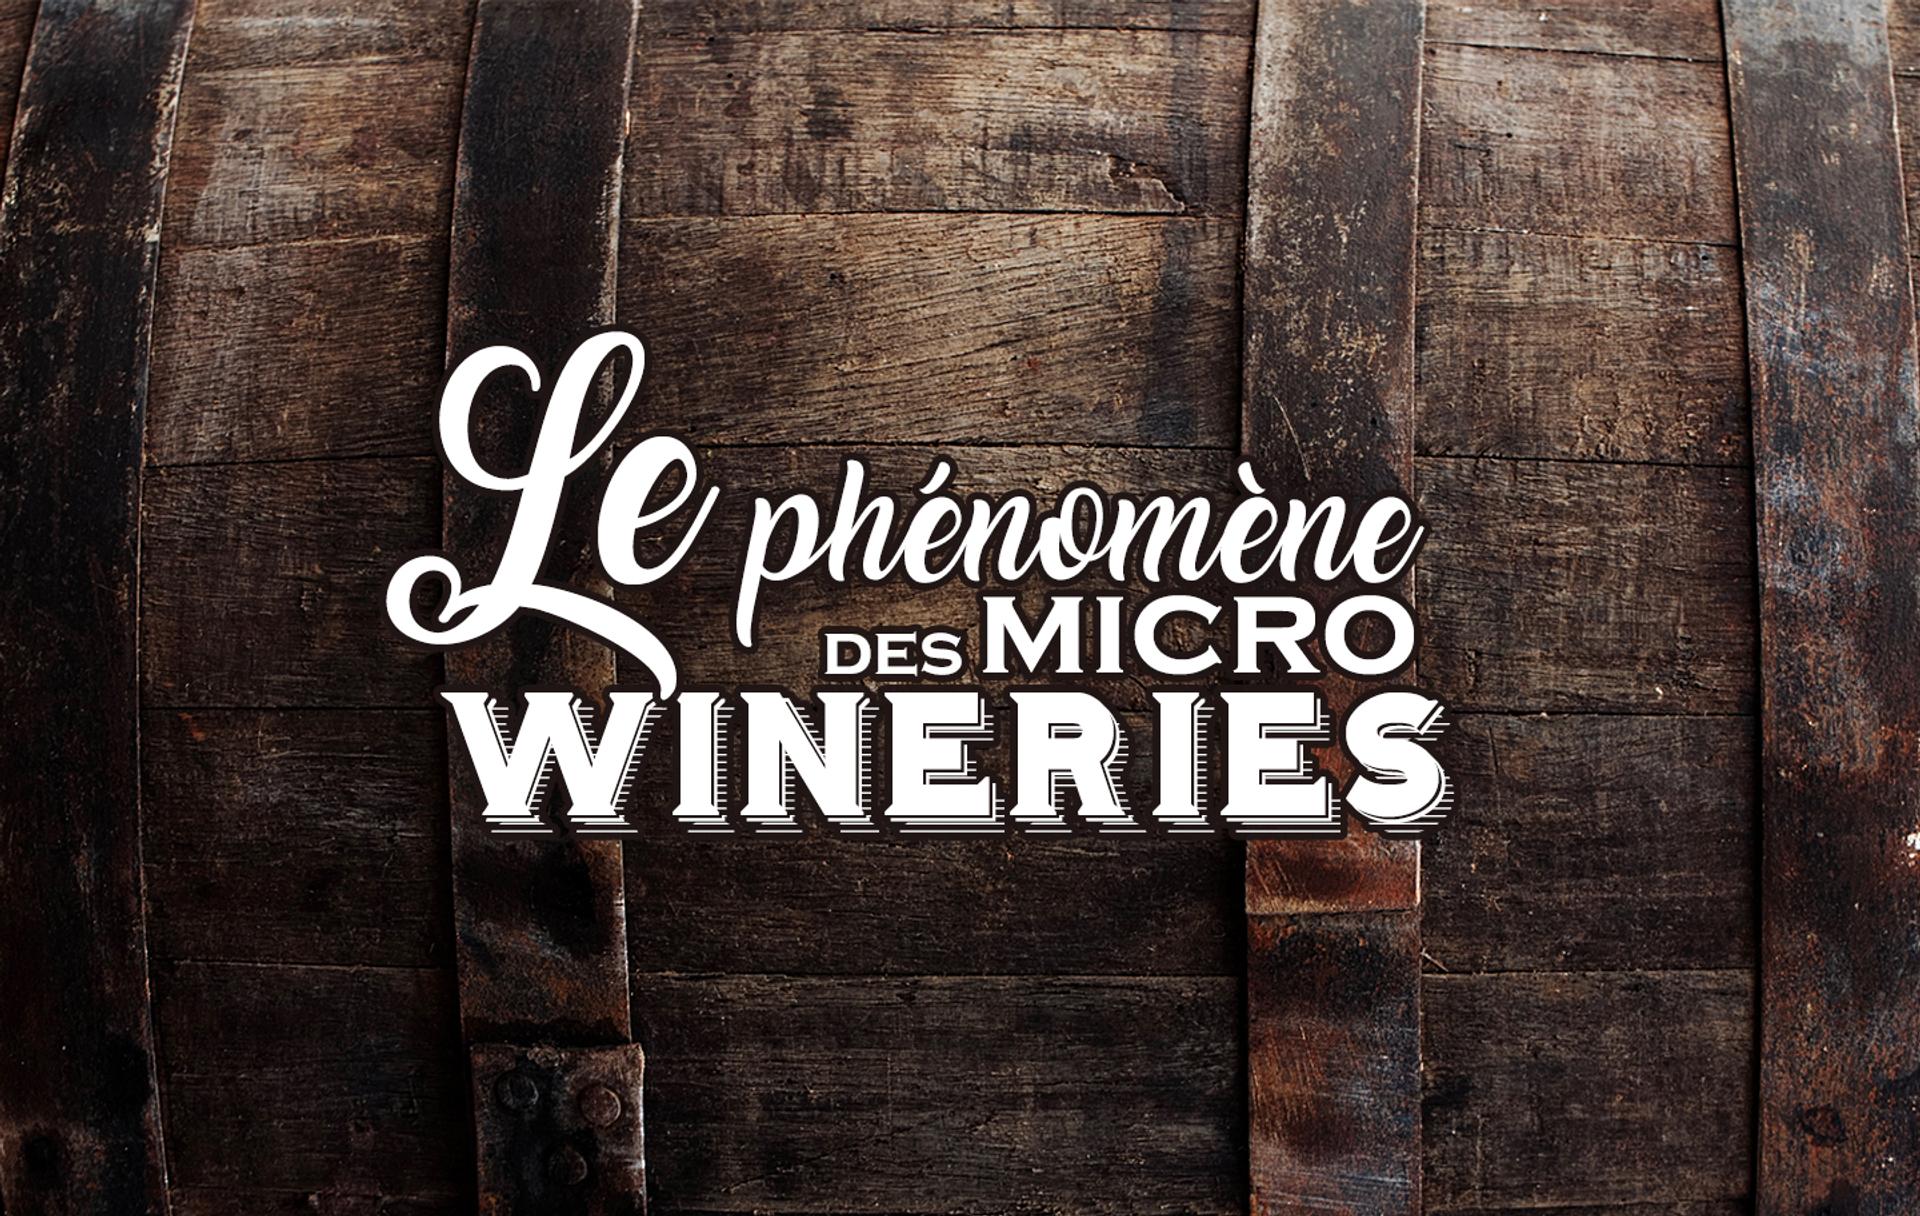 Le phénomène des micro wineries